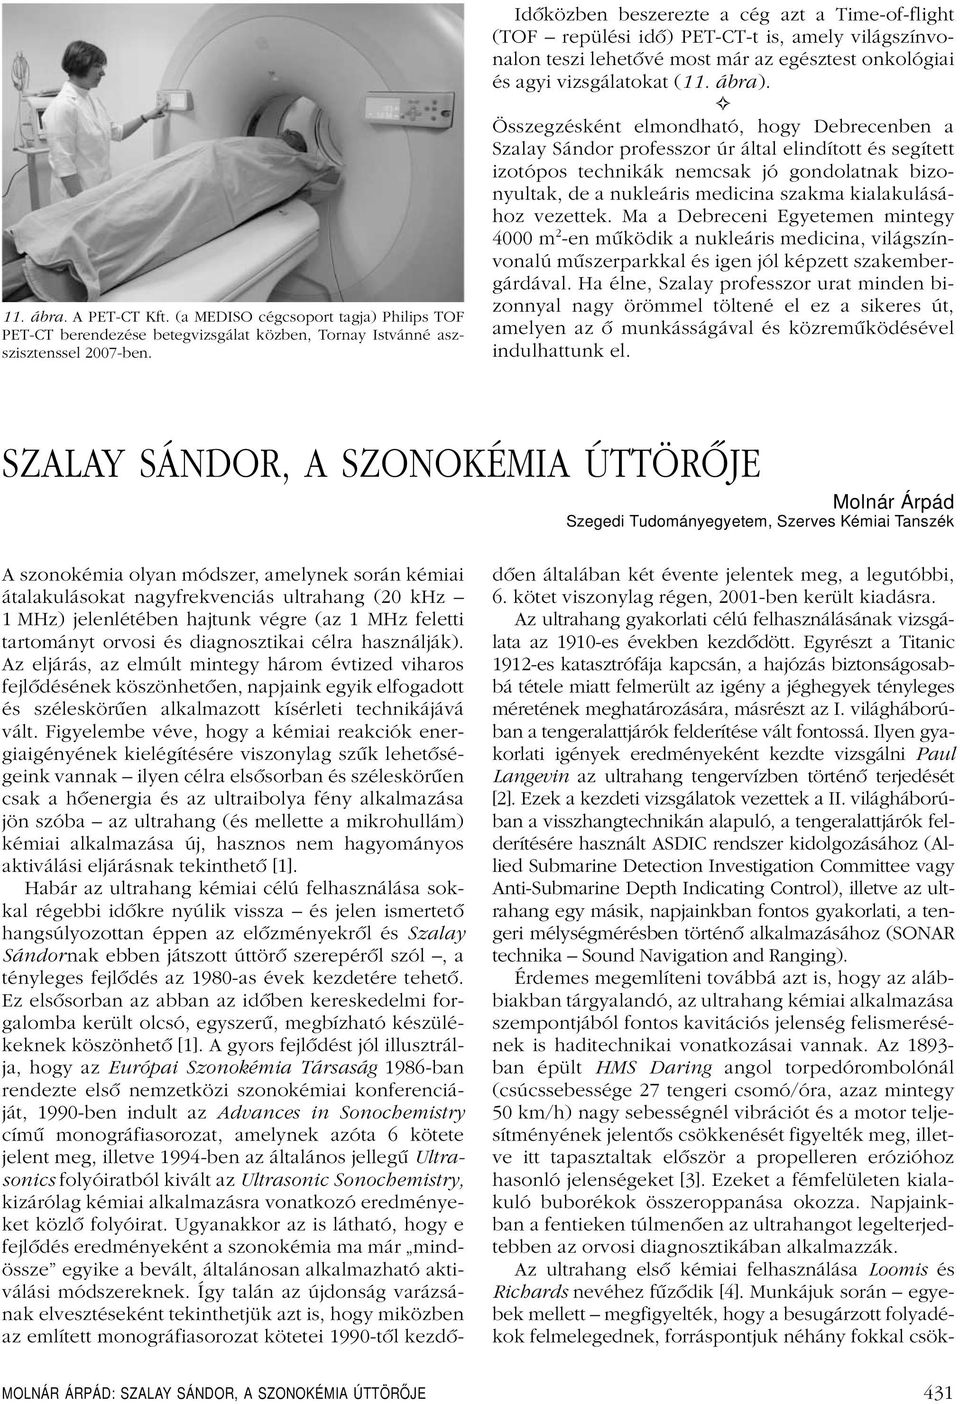 Összegzésként elmondható, hogy Debrecenben a Szalay Sándor professzor úr által elindított és segített izotópos technikák nemcsak jó gondolatnak bizonyultak, de a nukleáris medicina szakma